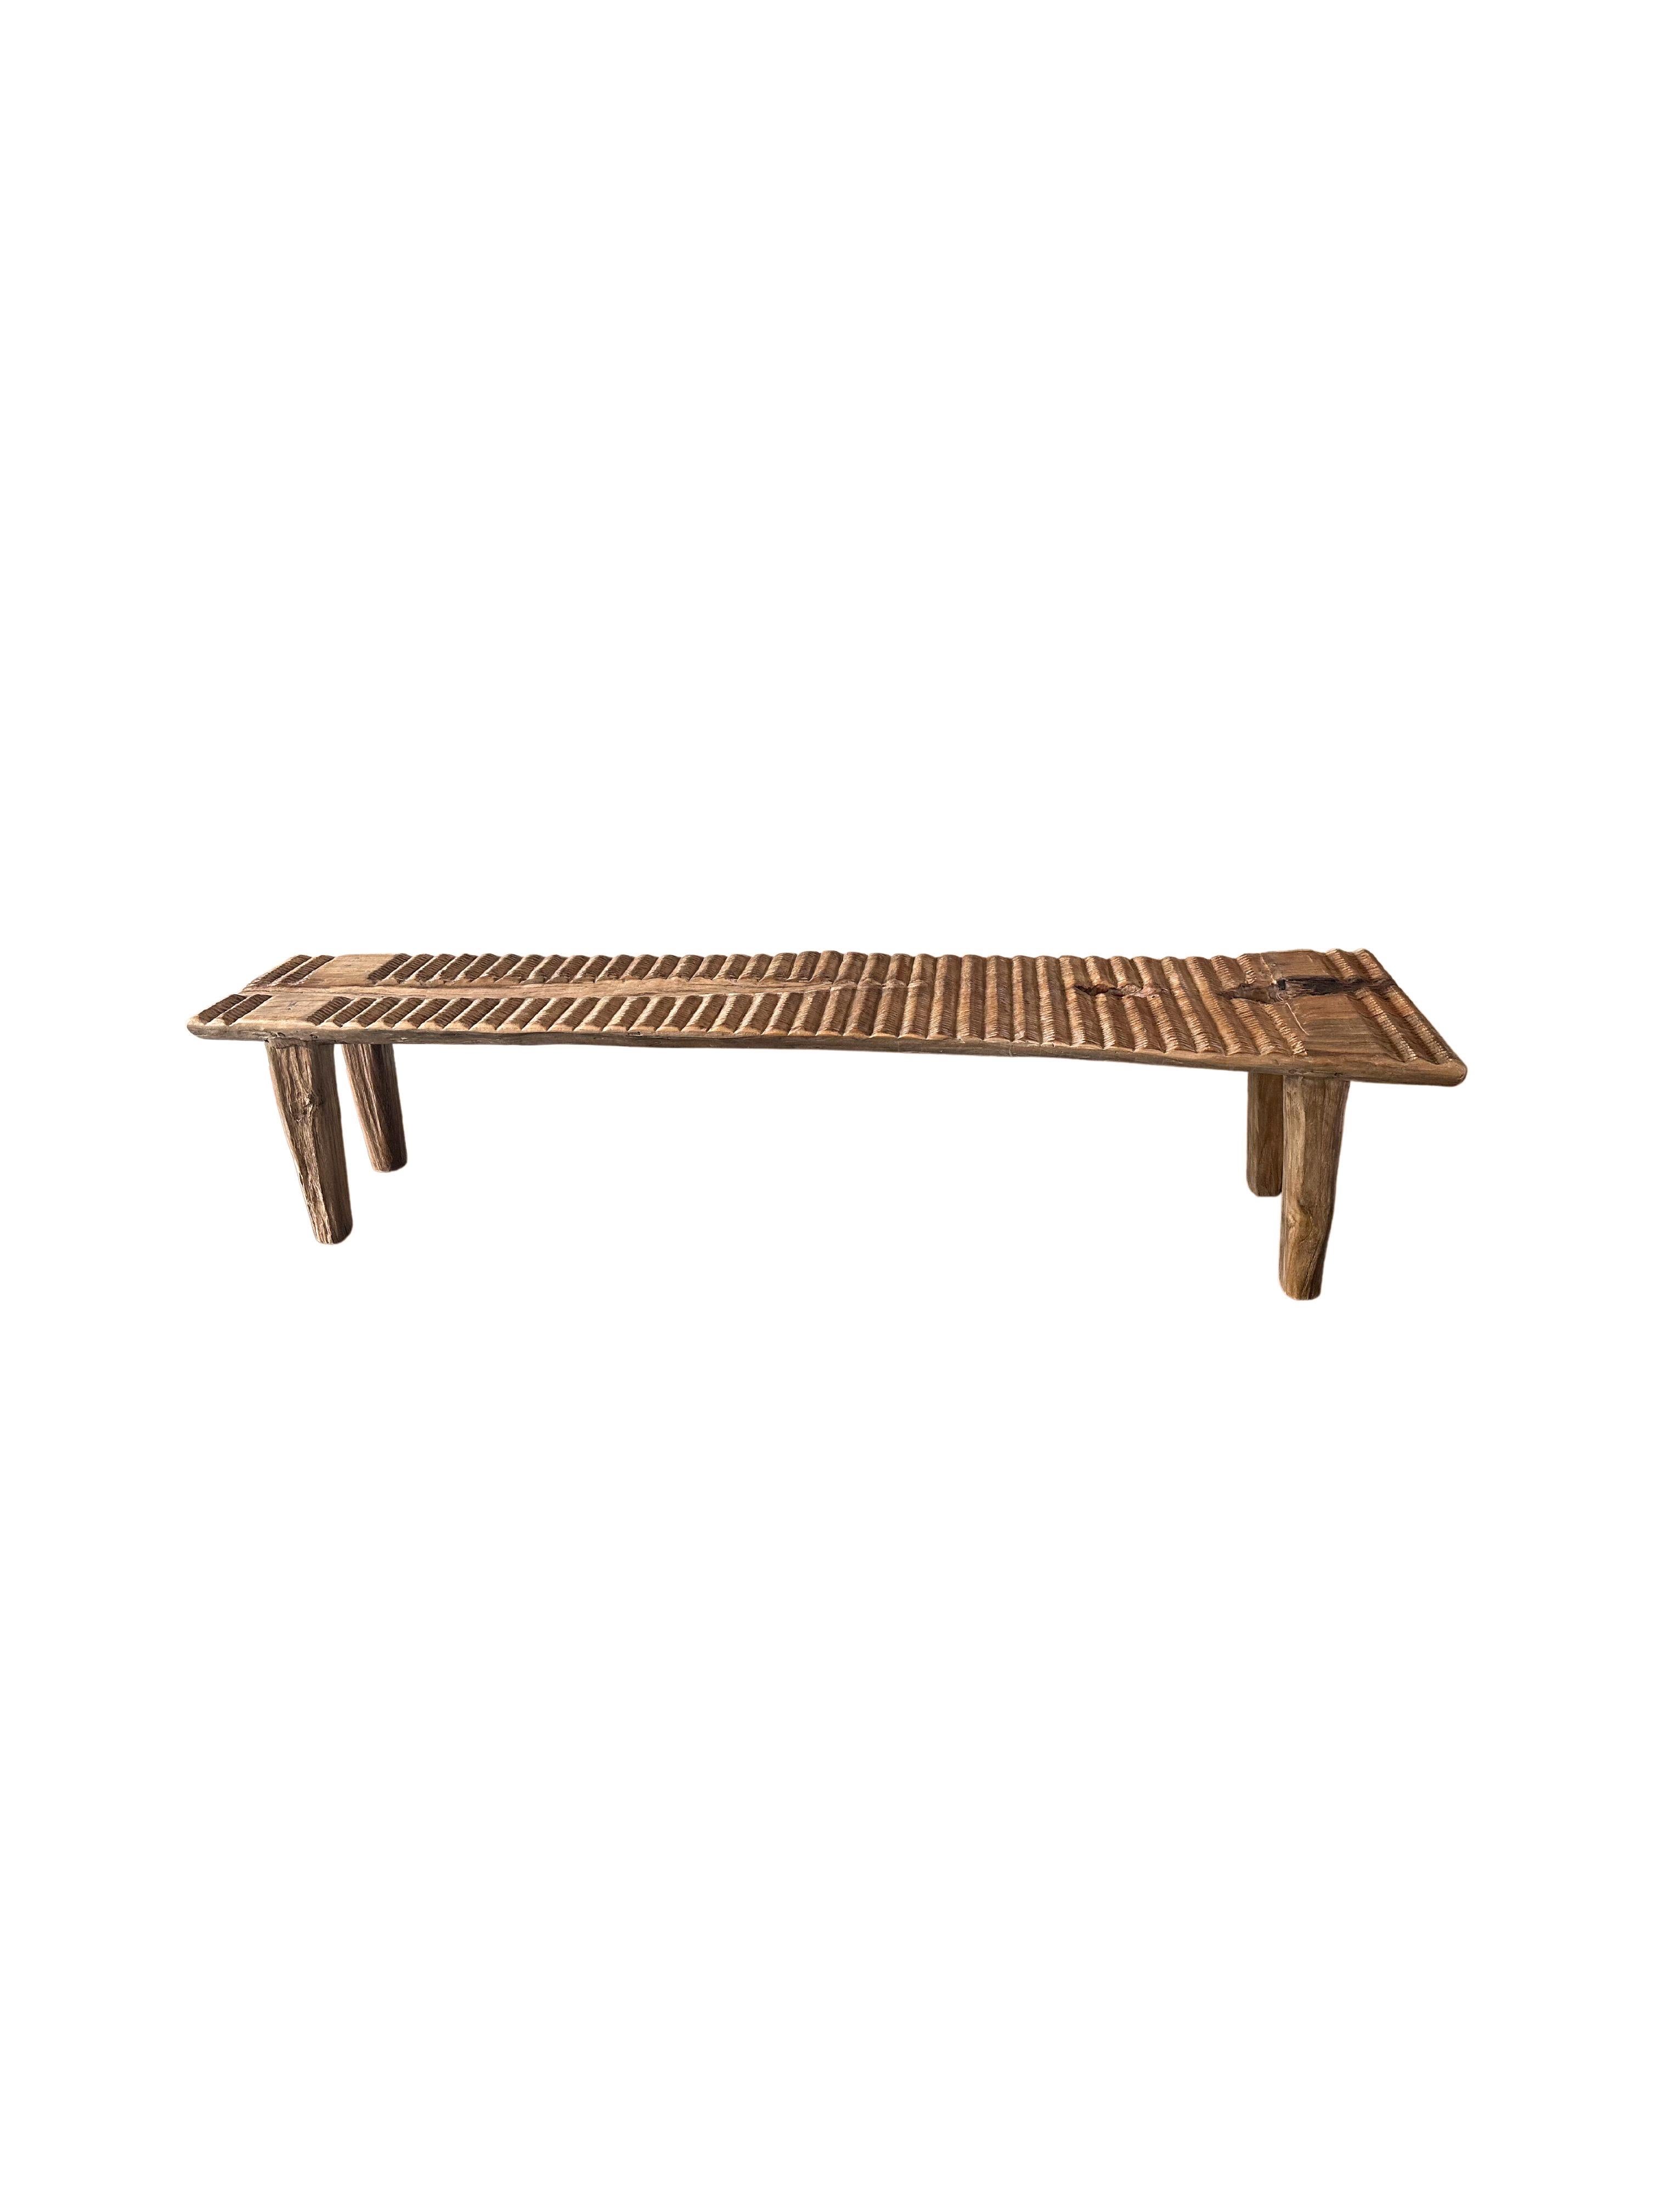 Teak Wood Sculptural Long Bench, Carved Detailing, Modern Organic For Sale 1